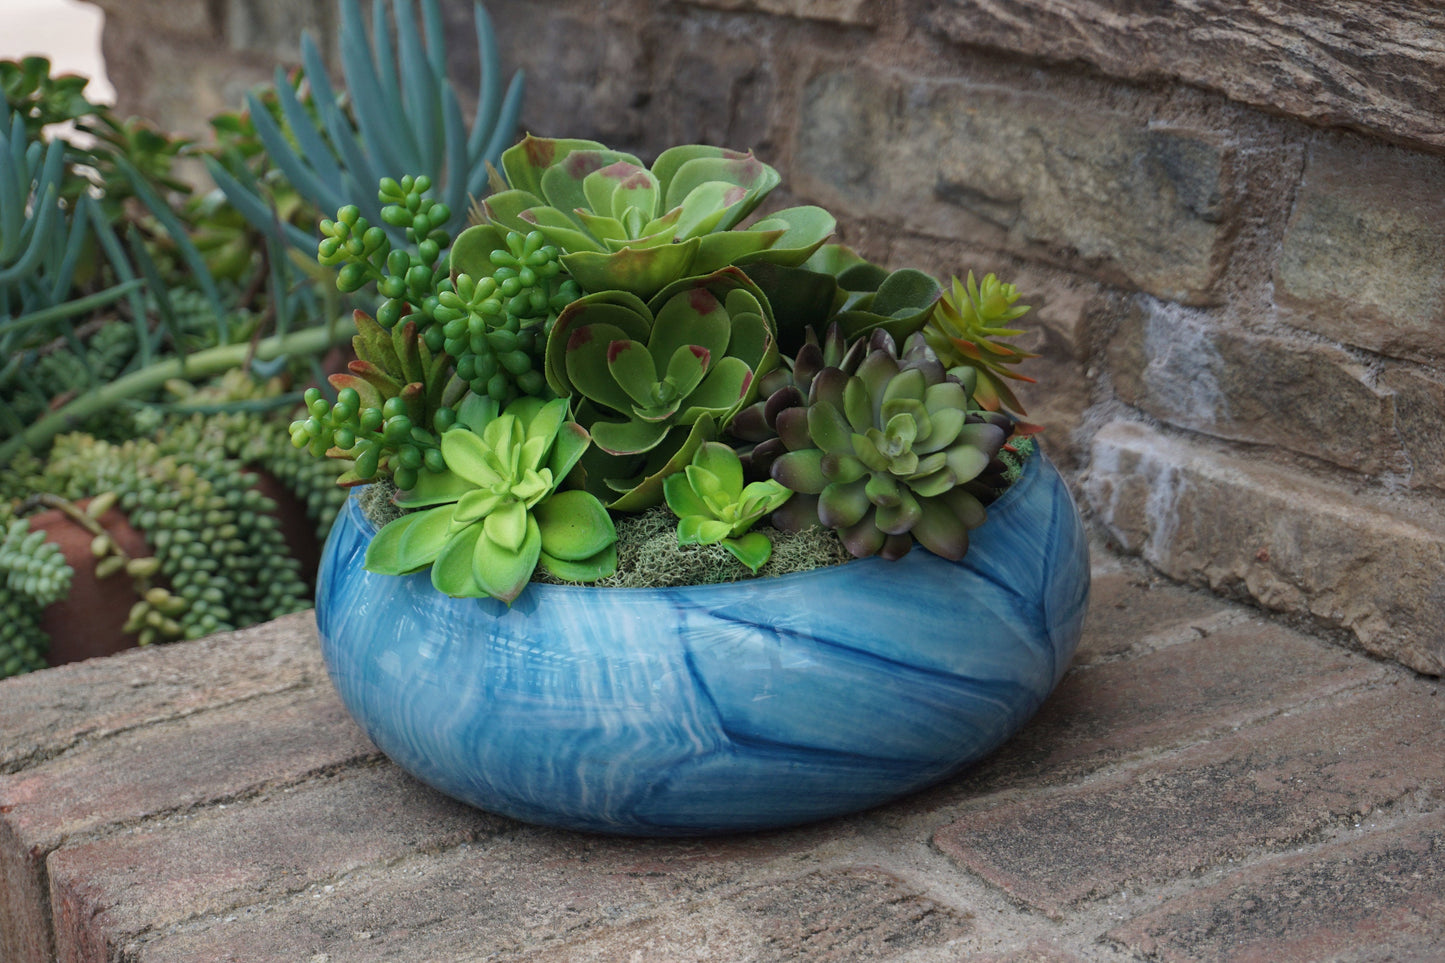 10" Art Glass Low Bowl Planters/Succulent Planters